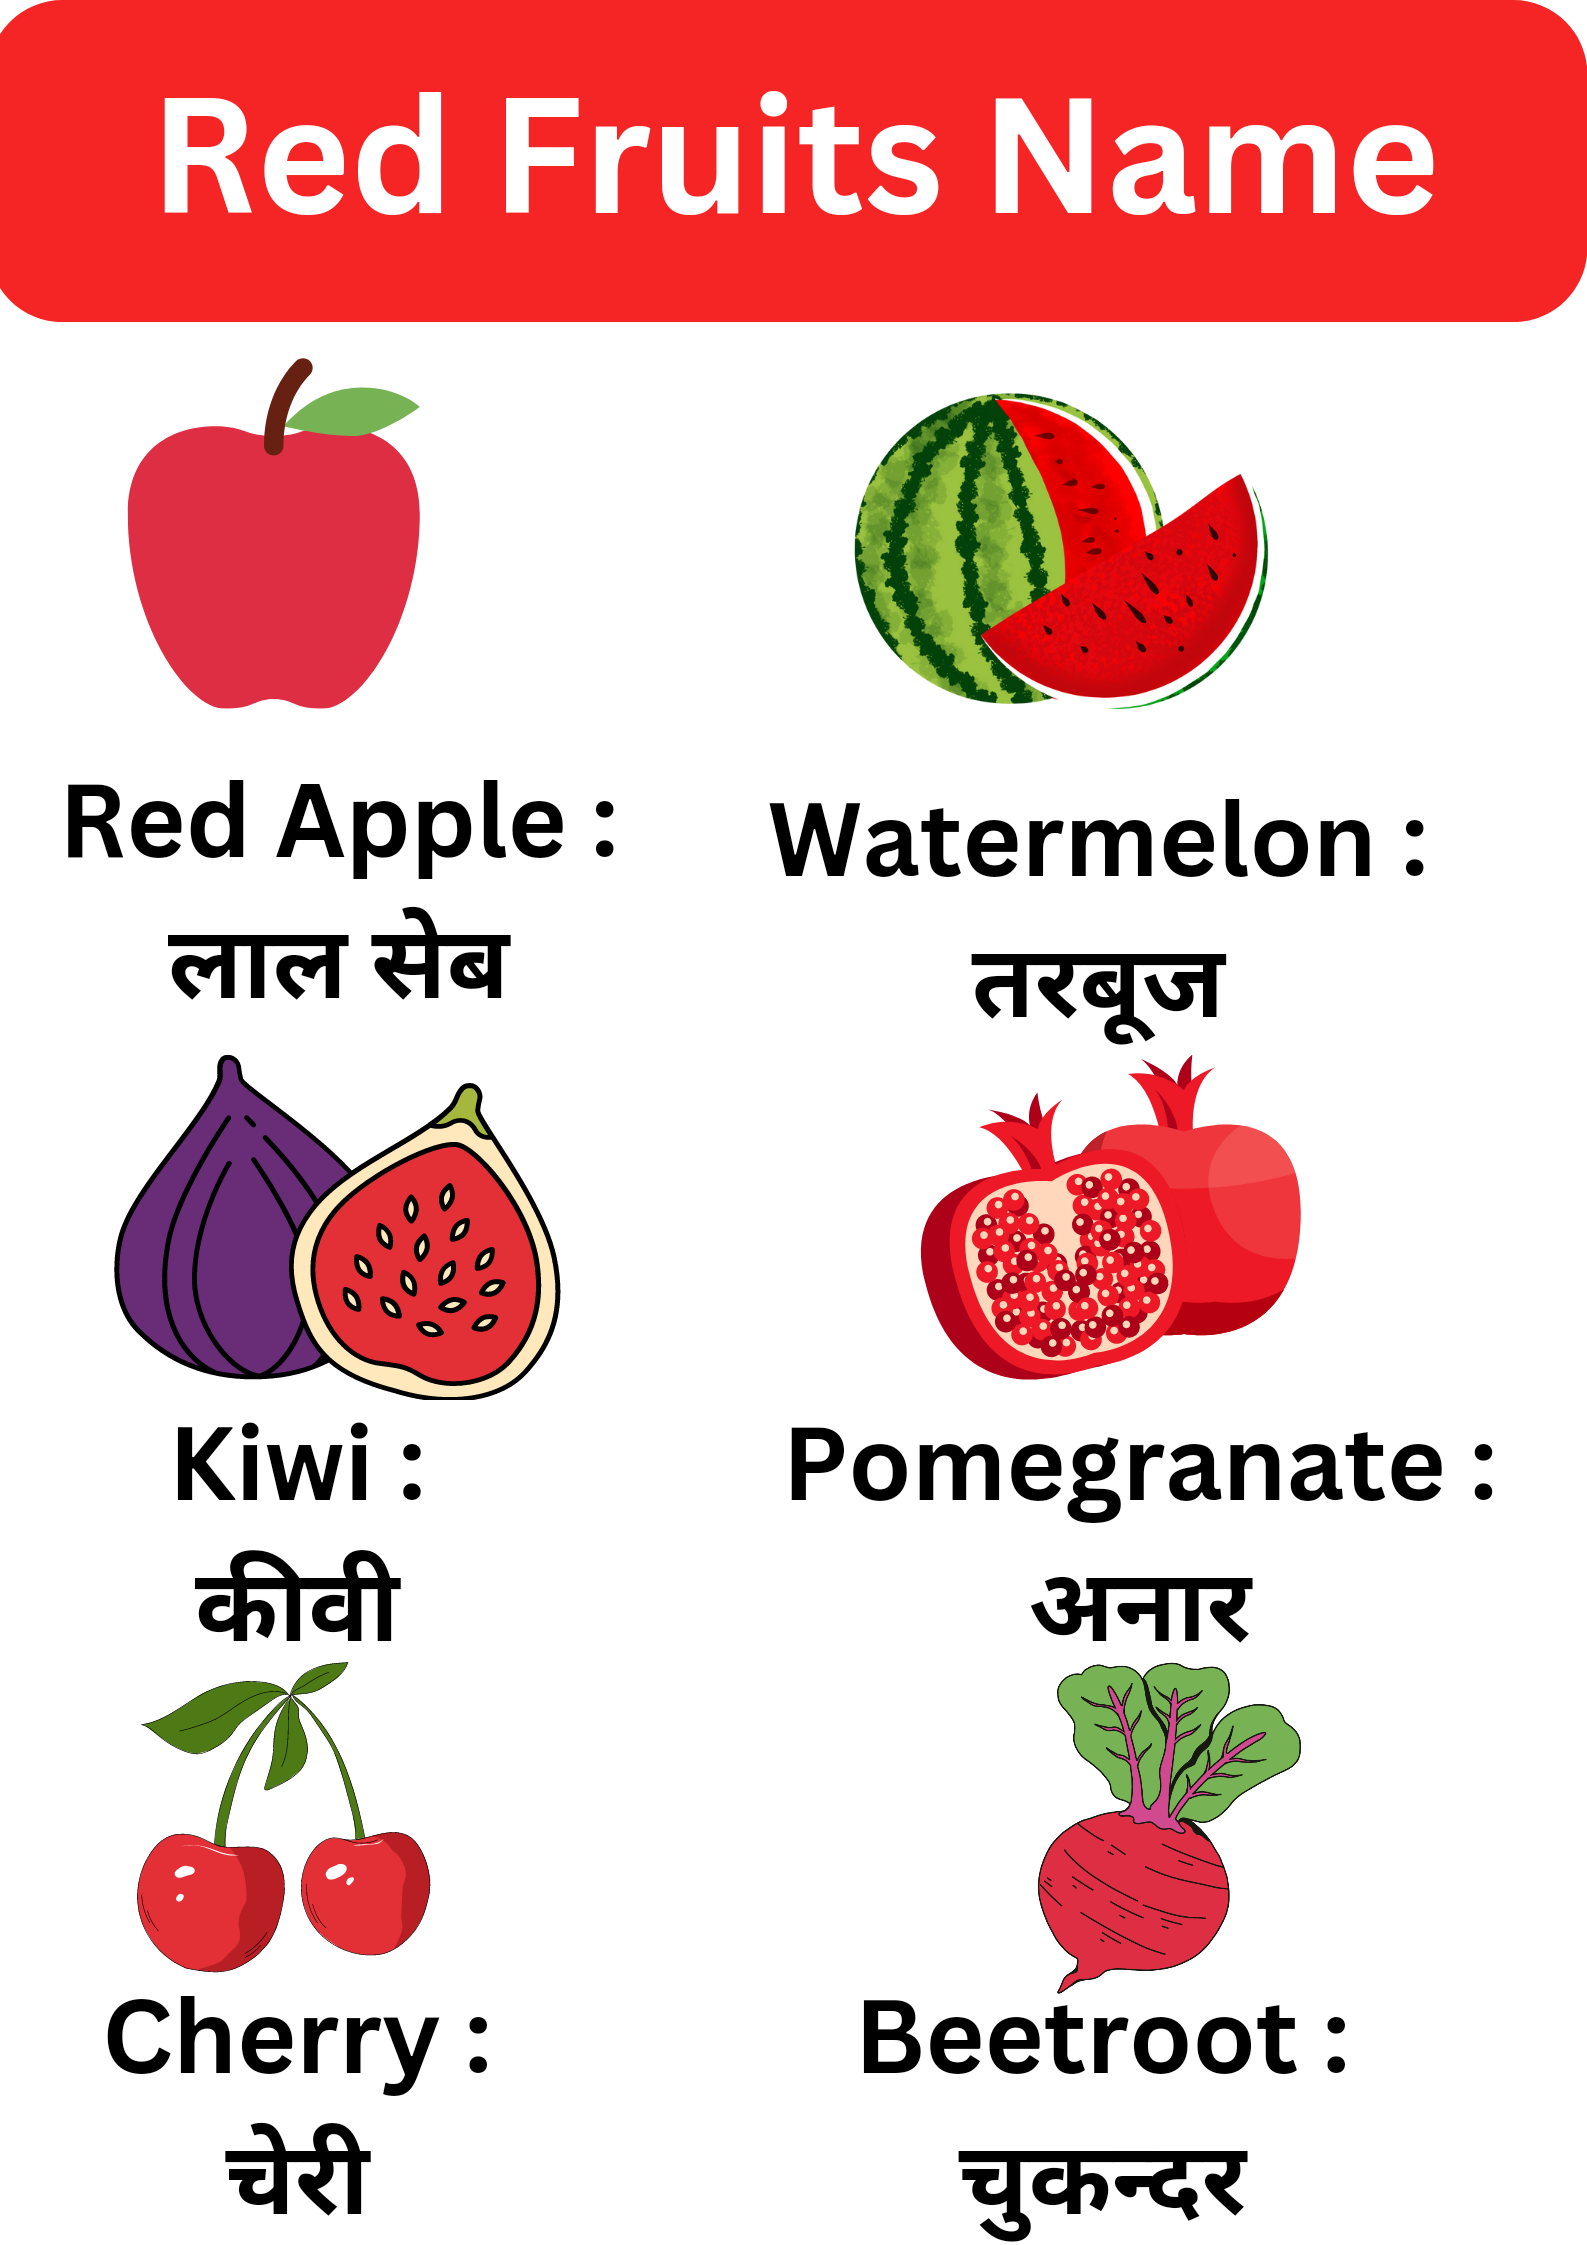 Red fruits name : लाल रंग के फलों के नाम